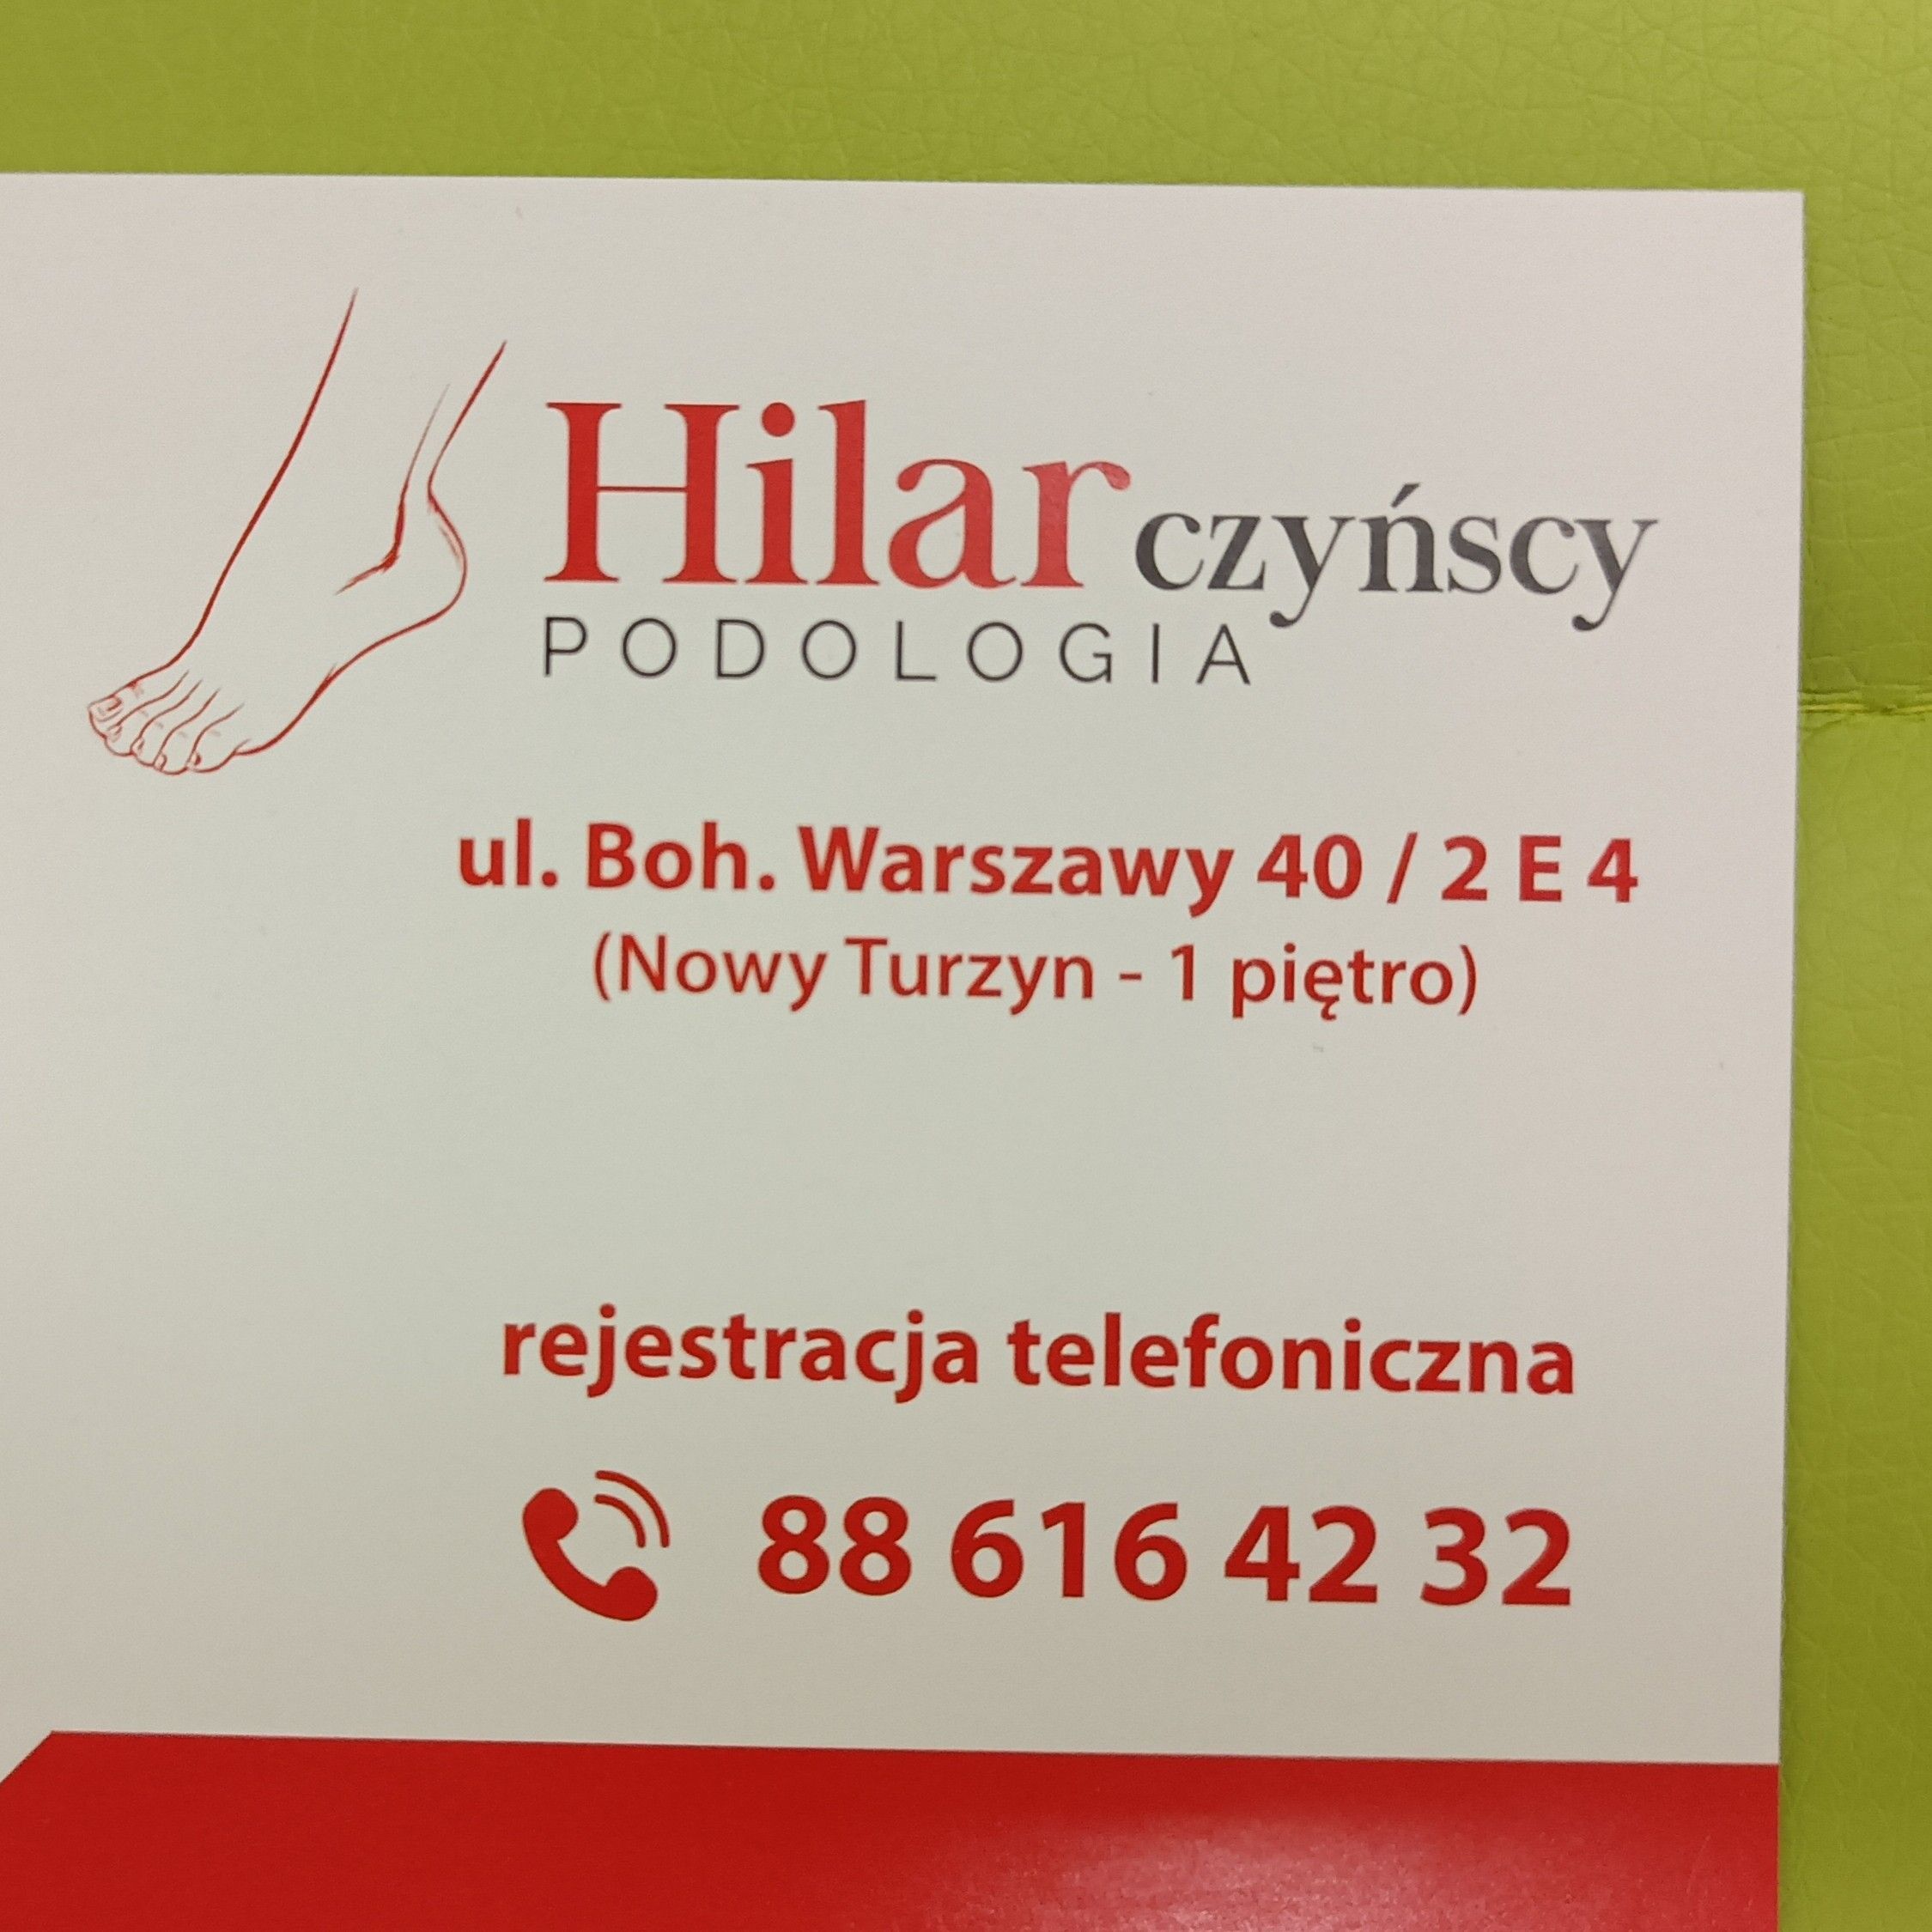 Hilarczyńscy - Podologia, aleja Bohaterów Warszawy 40, 2E4 (Galeria Nowy Turzyn), 70-342, Szczecin